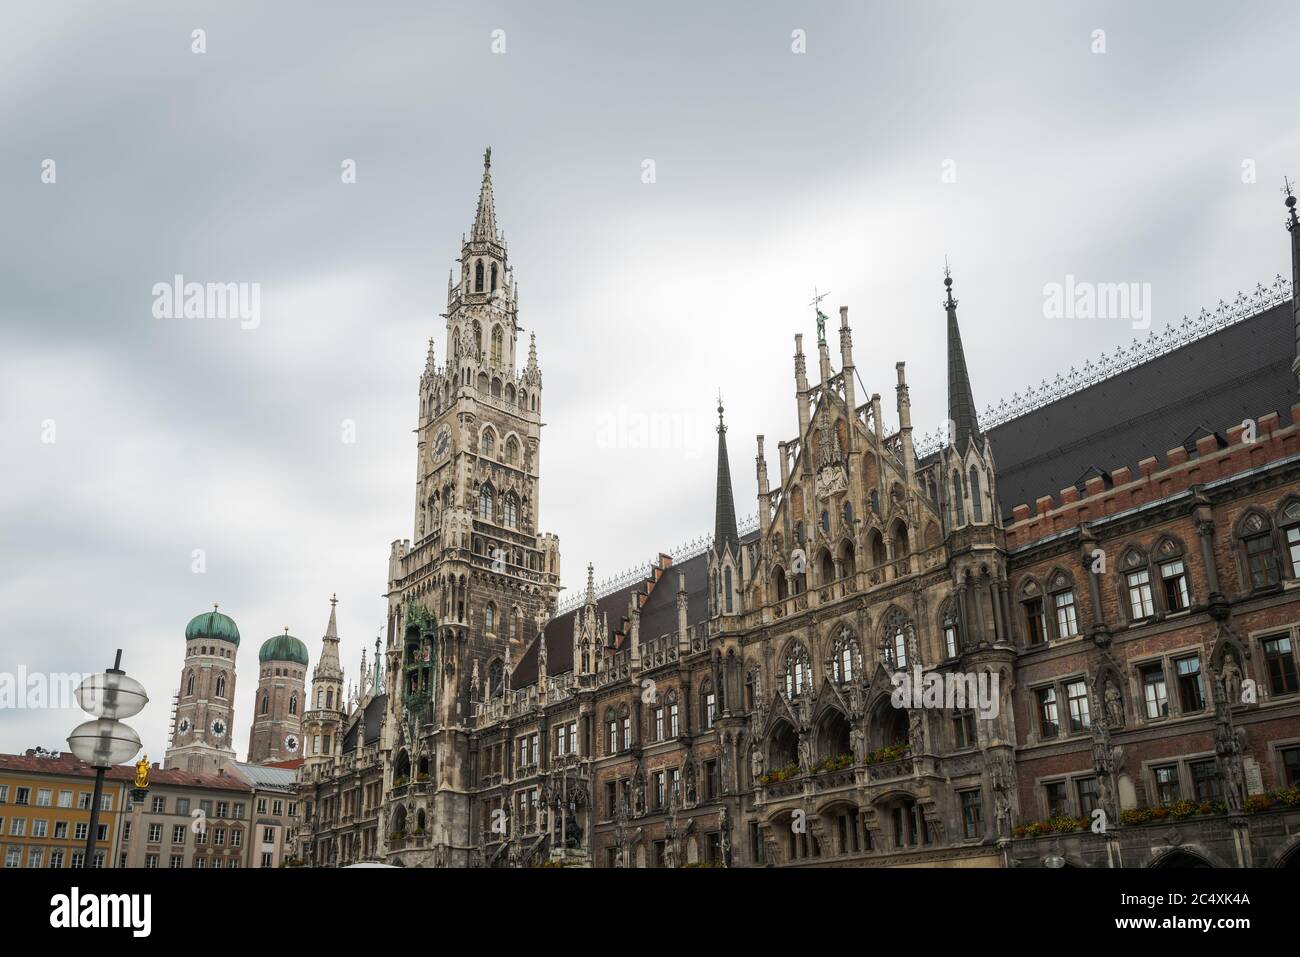 Das Neue Rathaus am Marienplatz in München am Tag mit verwischten, unscharfen Menschen in Bewegung, Langzeitbelichtung Stock Photo